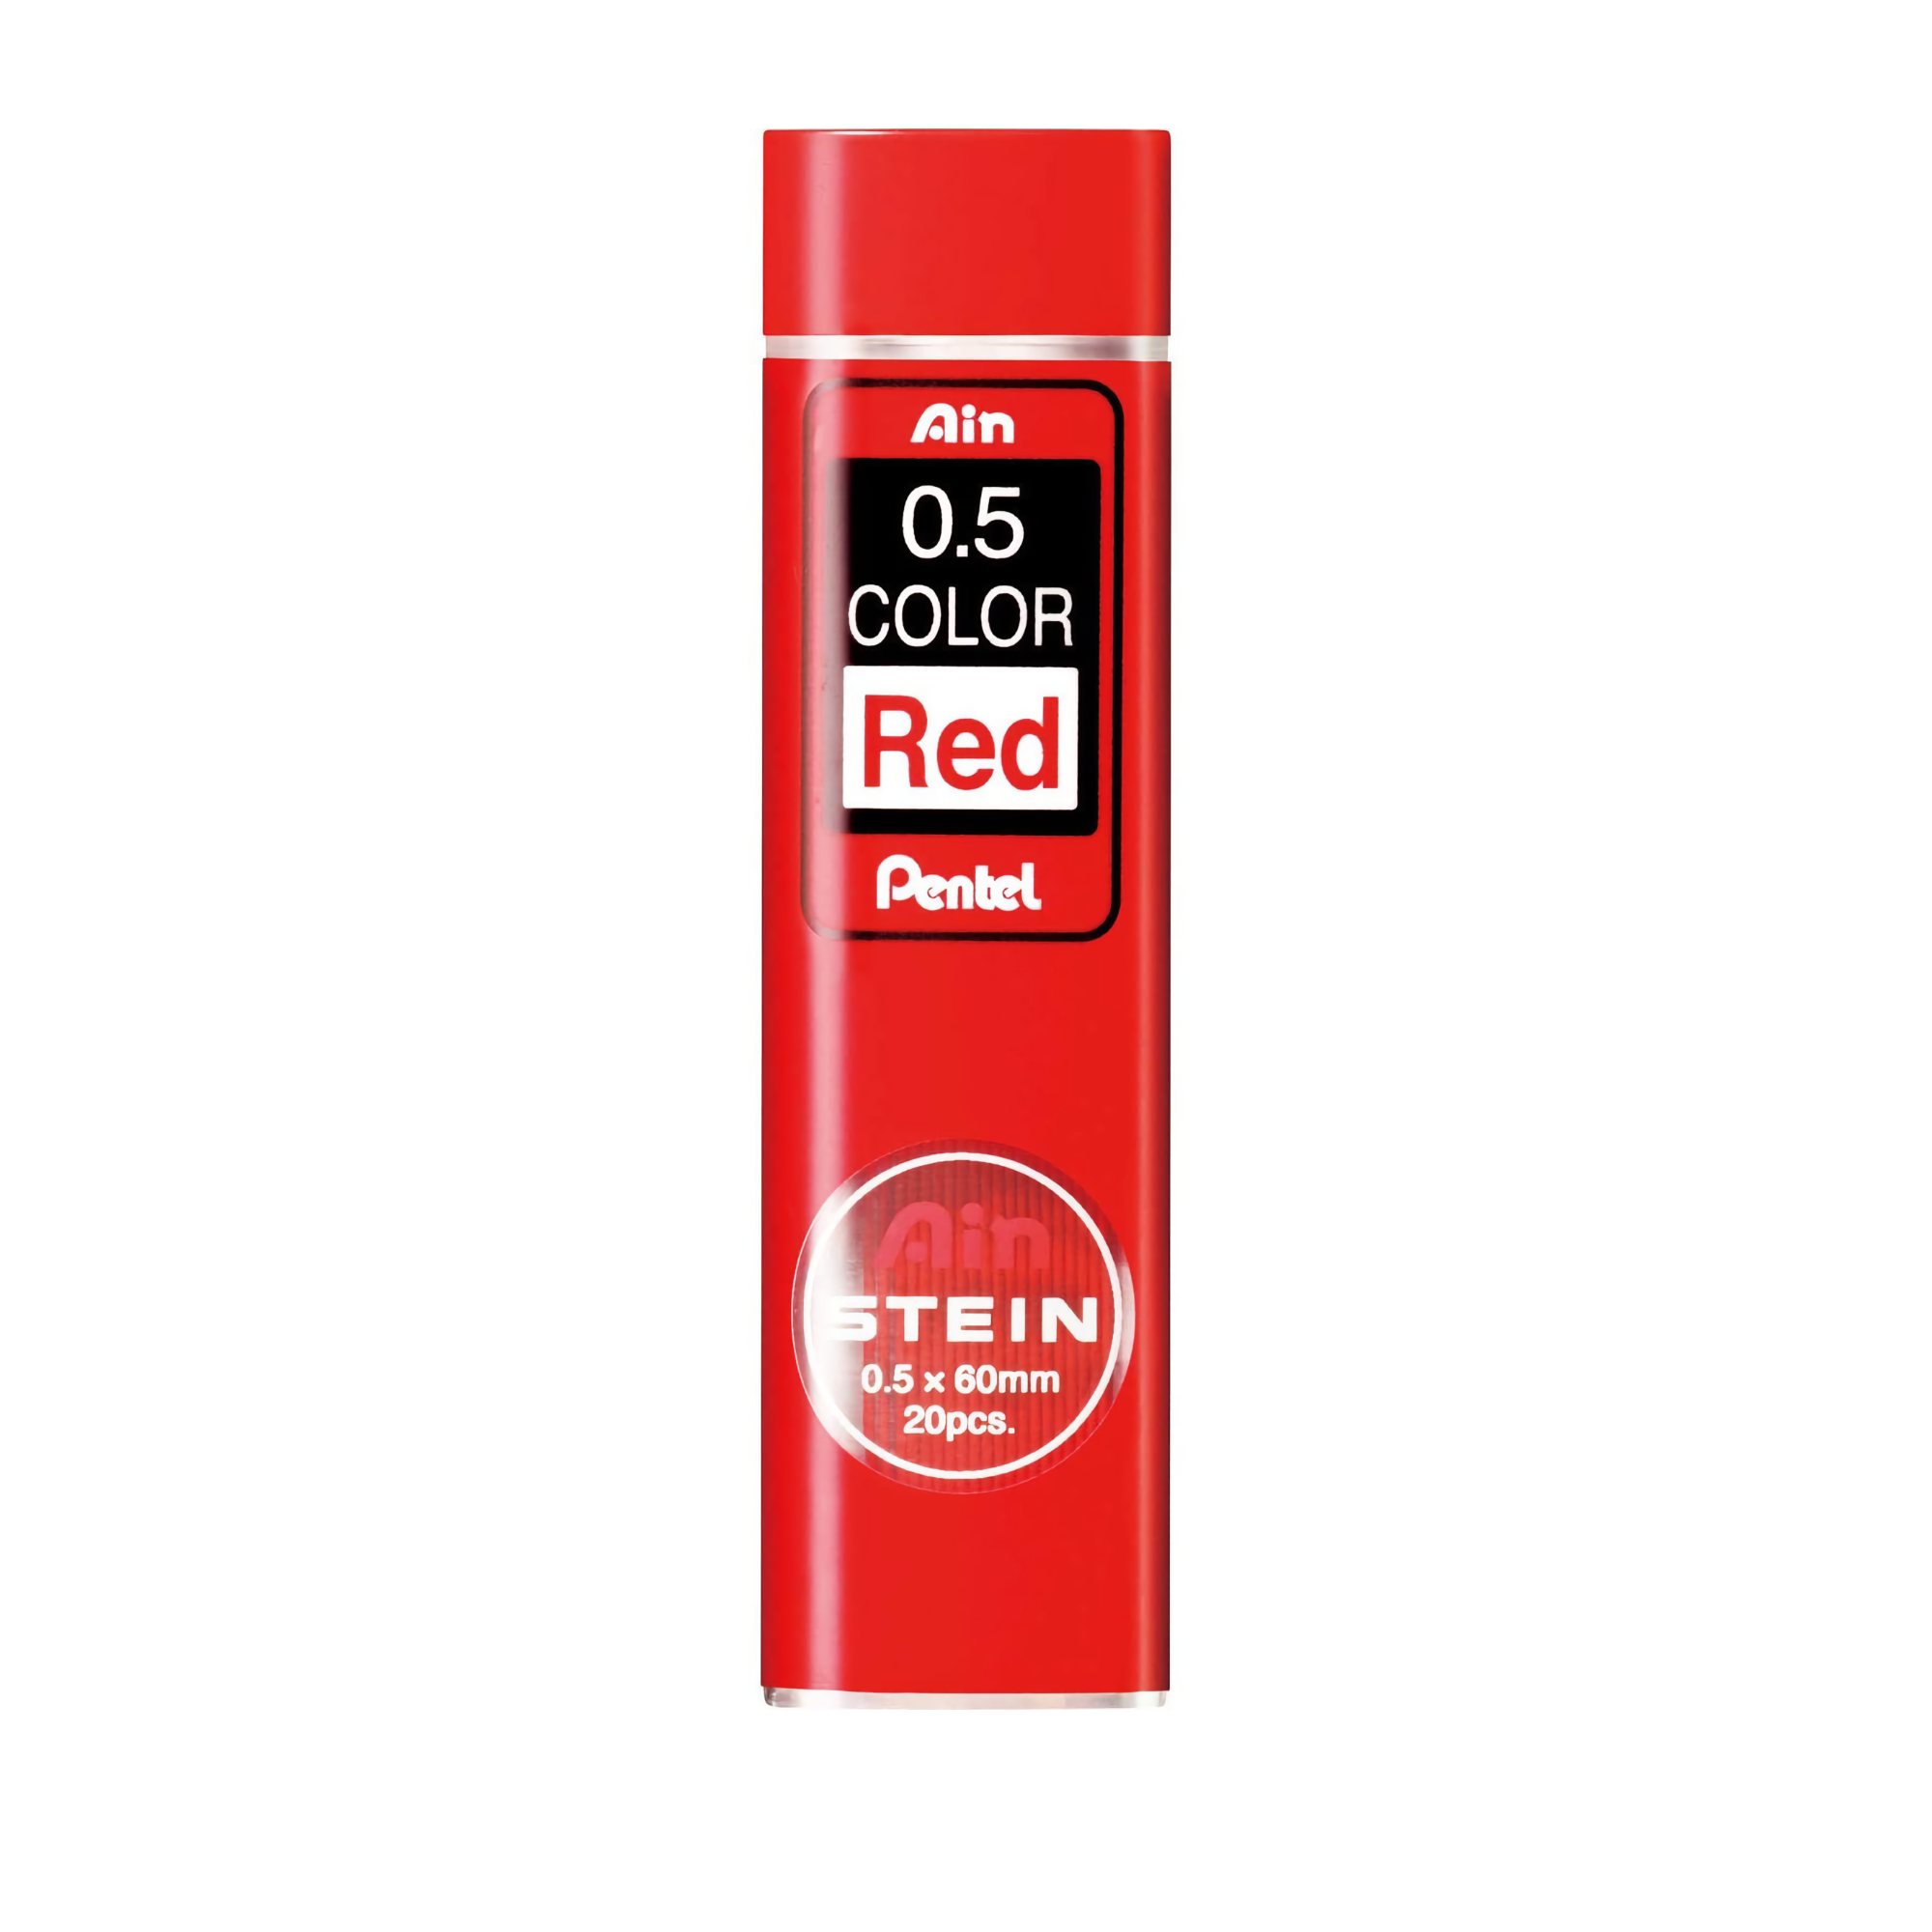 Pentel Ain Stein stift 0.5 Red